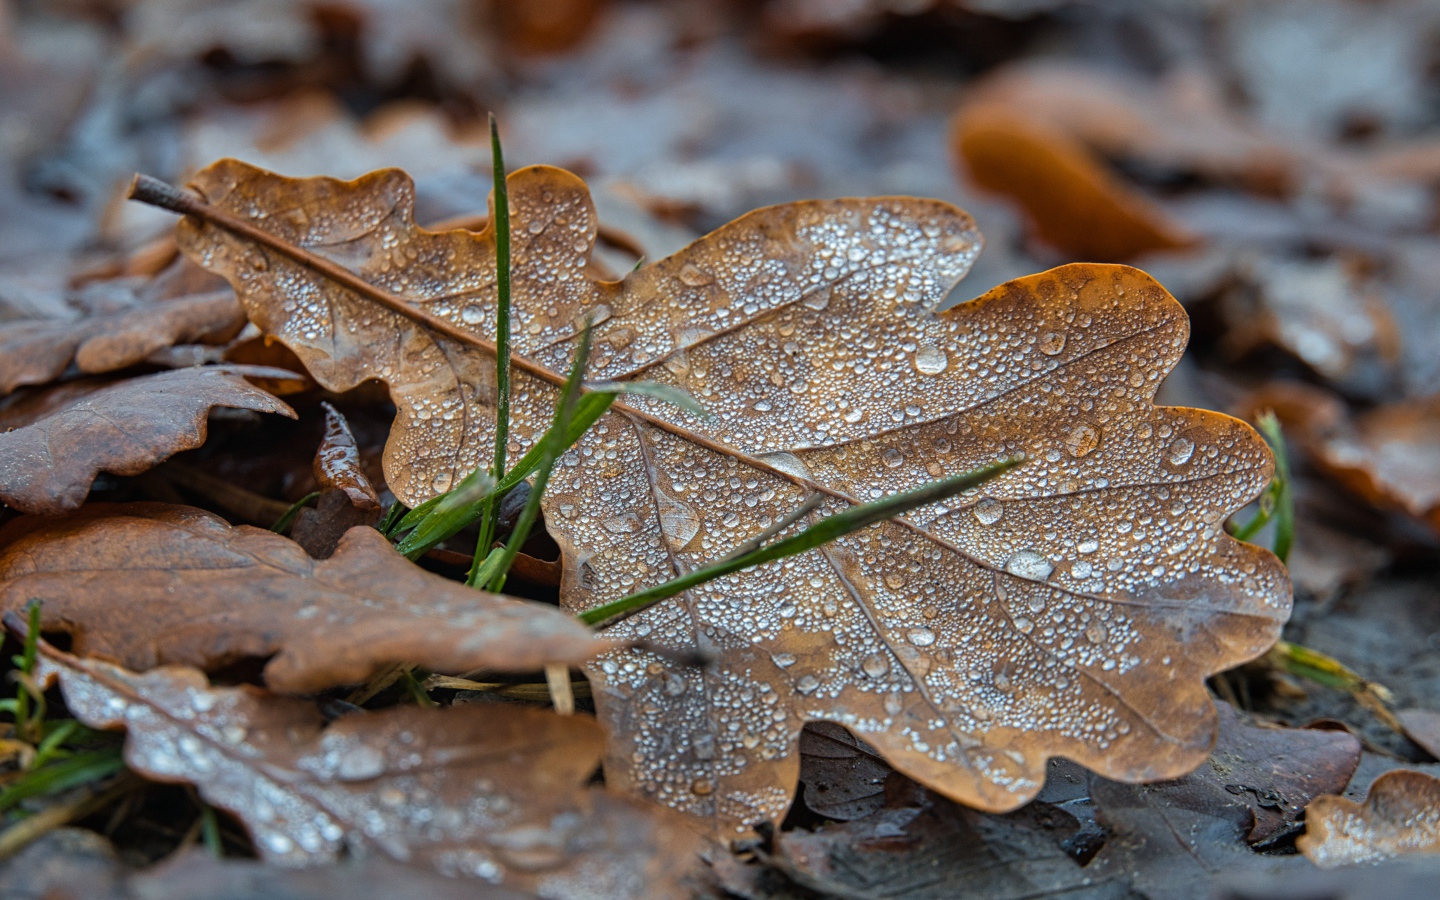 Fallen oak leaves in drops of dew